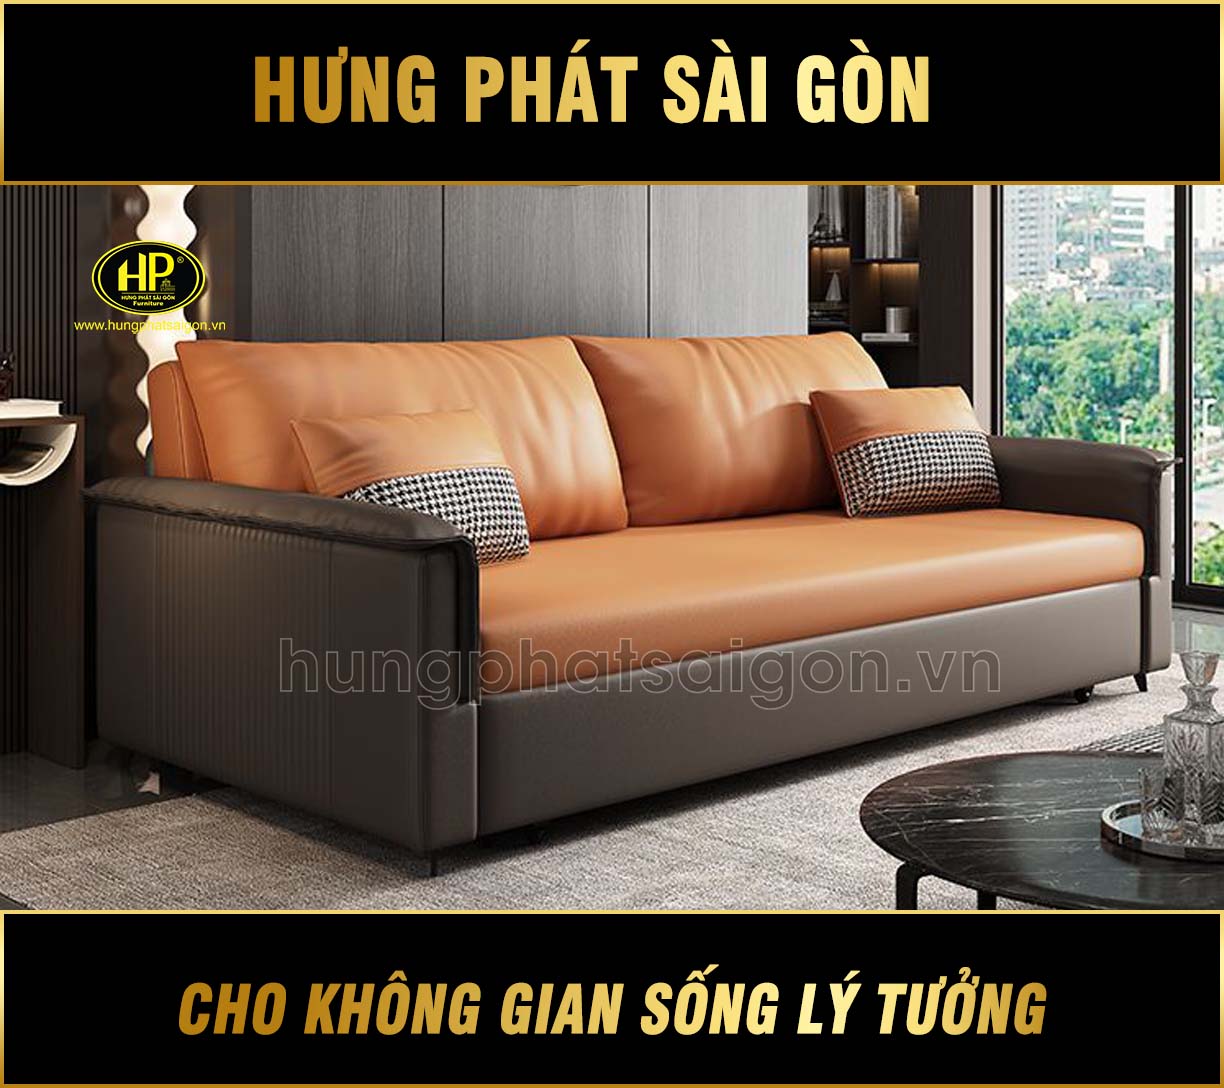 Sofa Giường Nhập Khẩu Cao Cấp GK-168